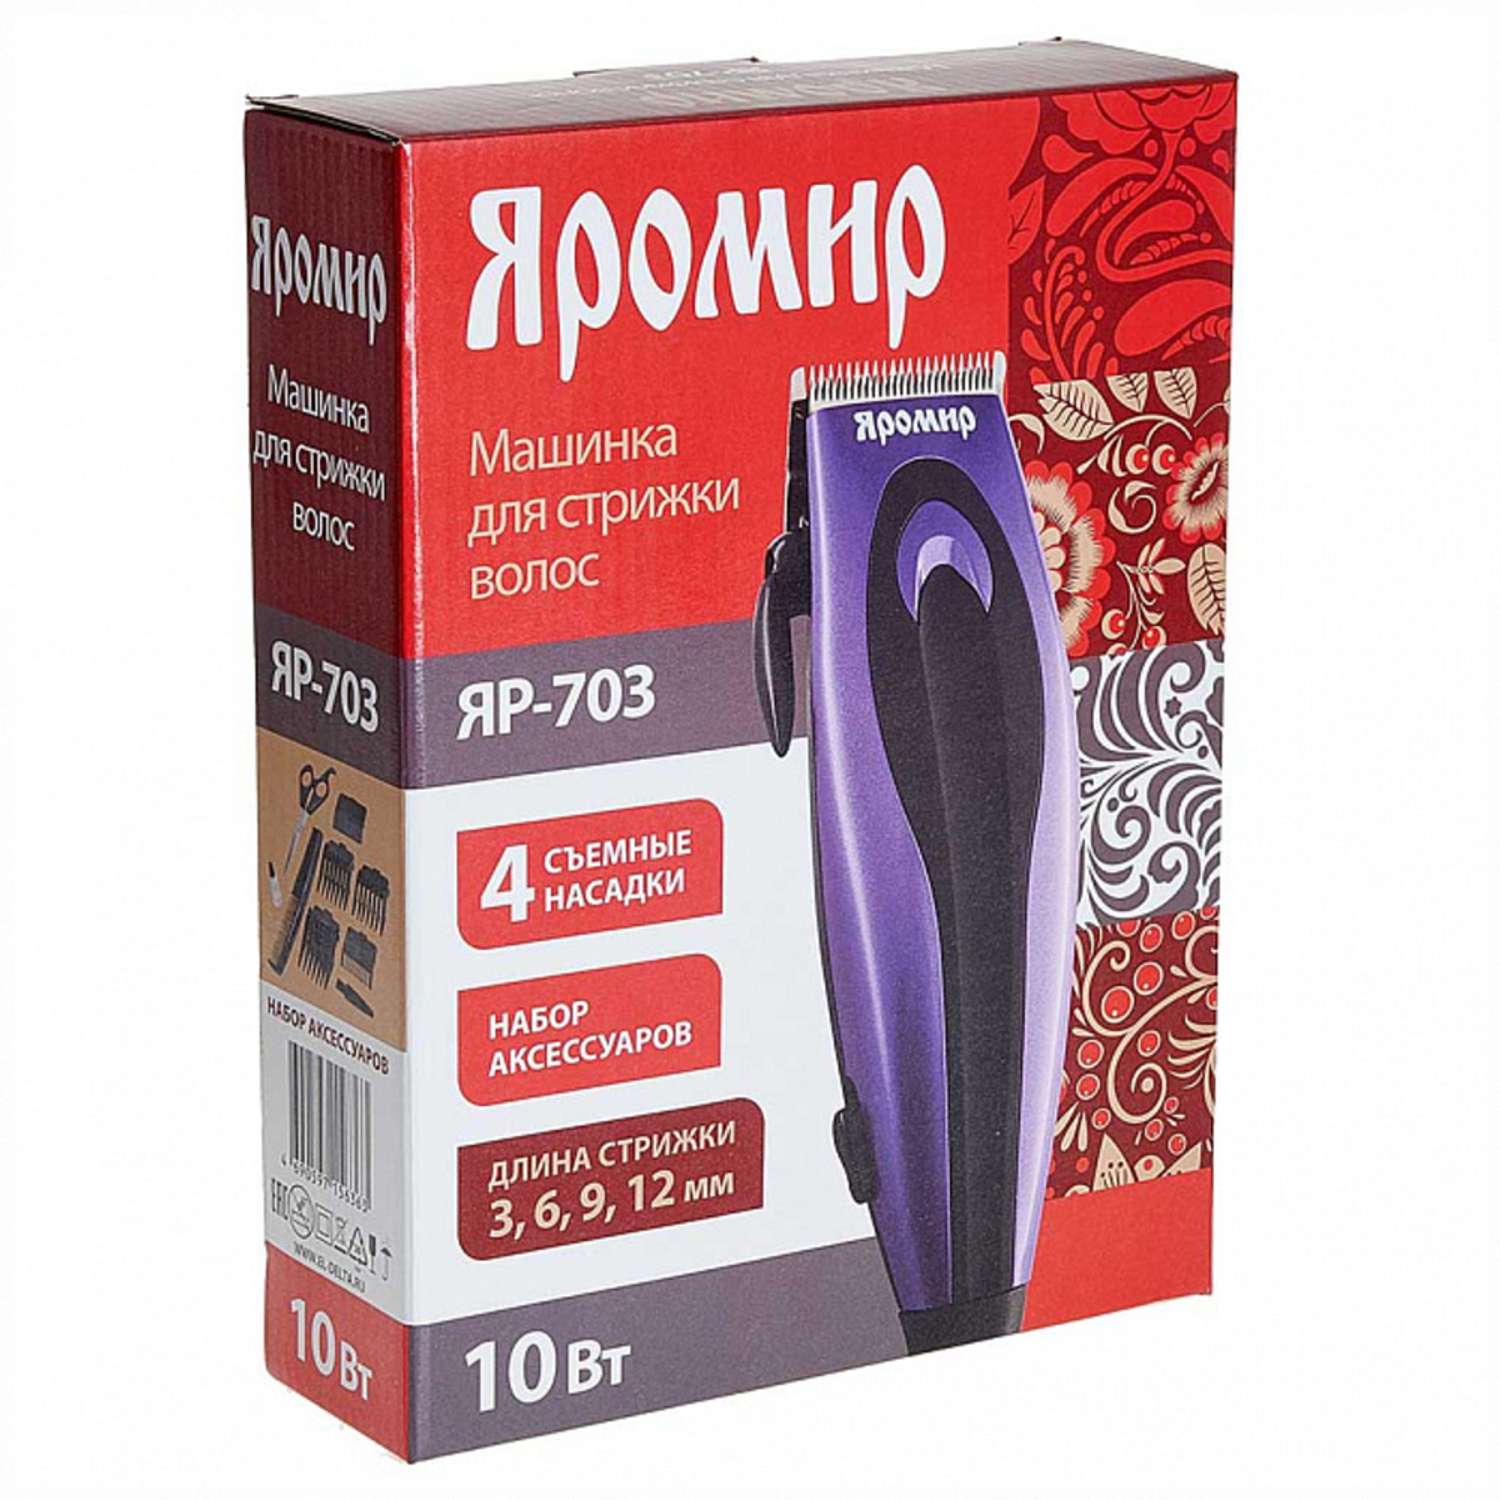 Машинка для стрижки волос Яромир ЯР-703 фиолетовый 10Вт 4 съемных гребня - фото 3